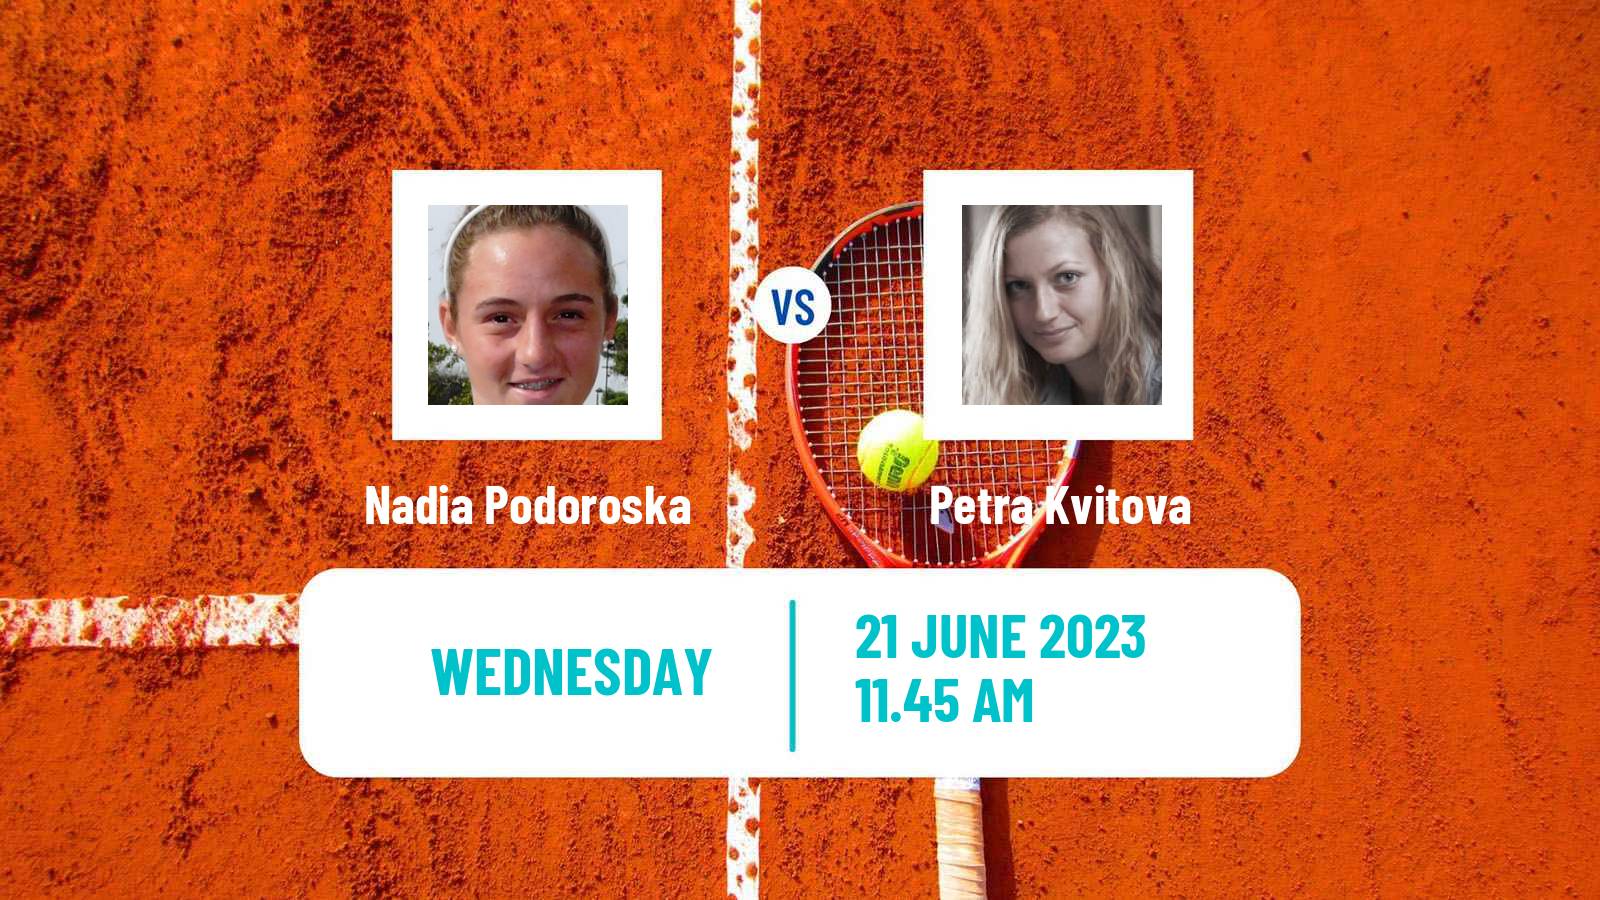 Tennis WTA Berlin Nadia Podoroska - Petra Kvitova